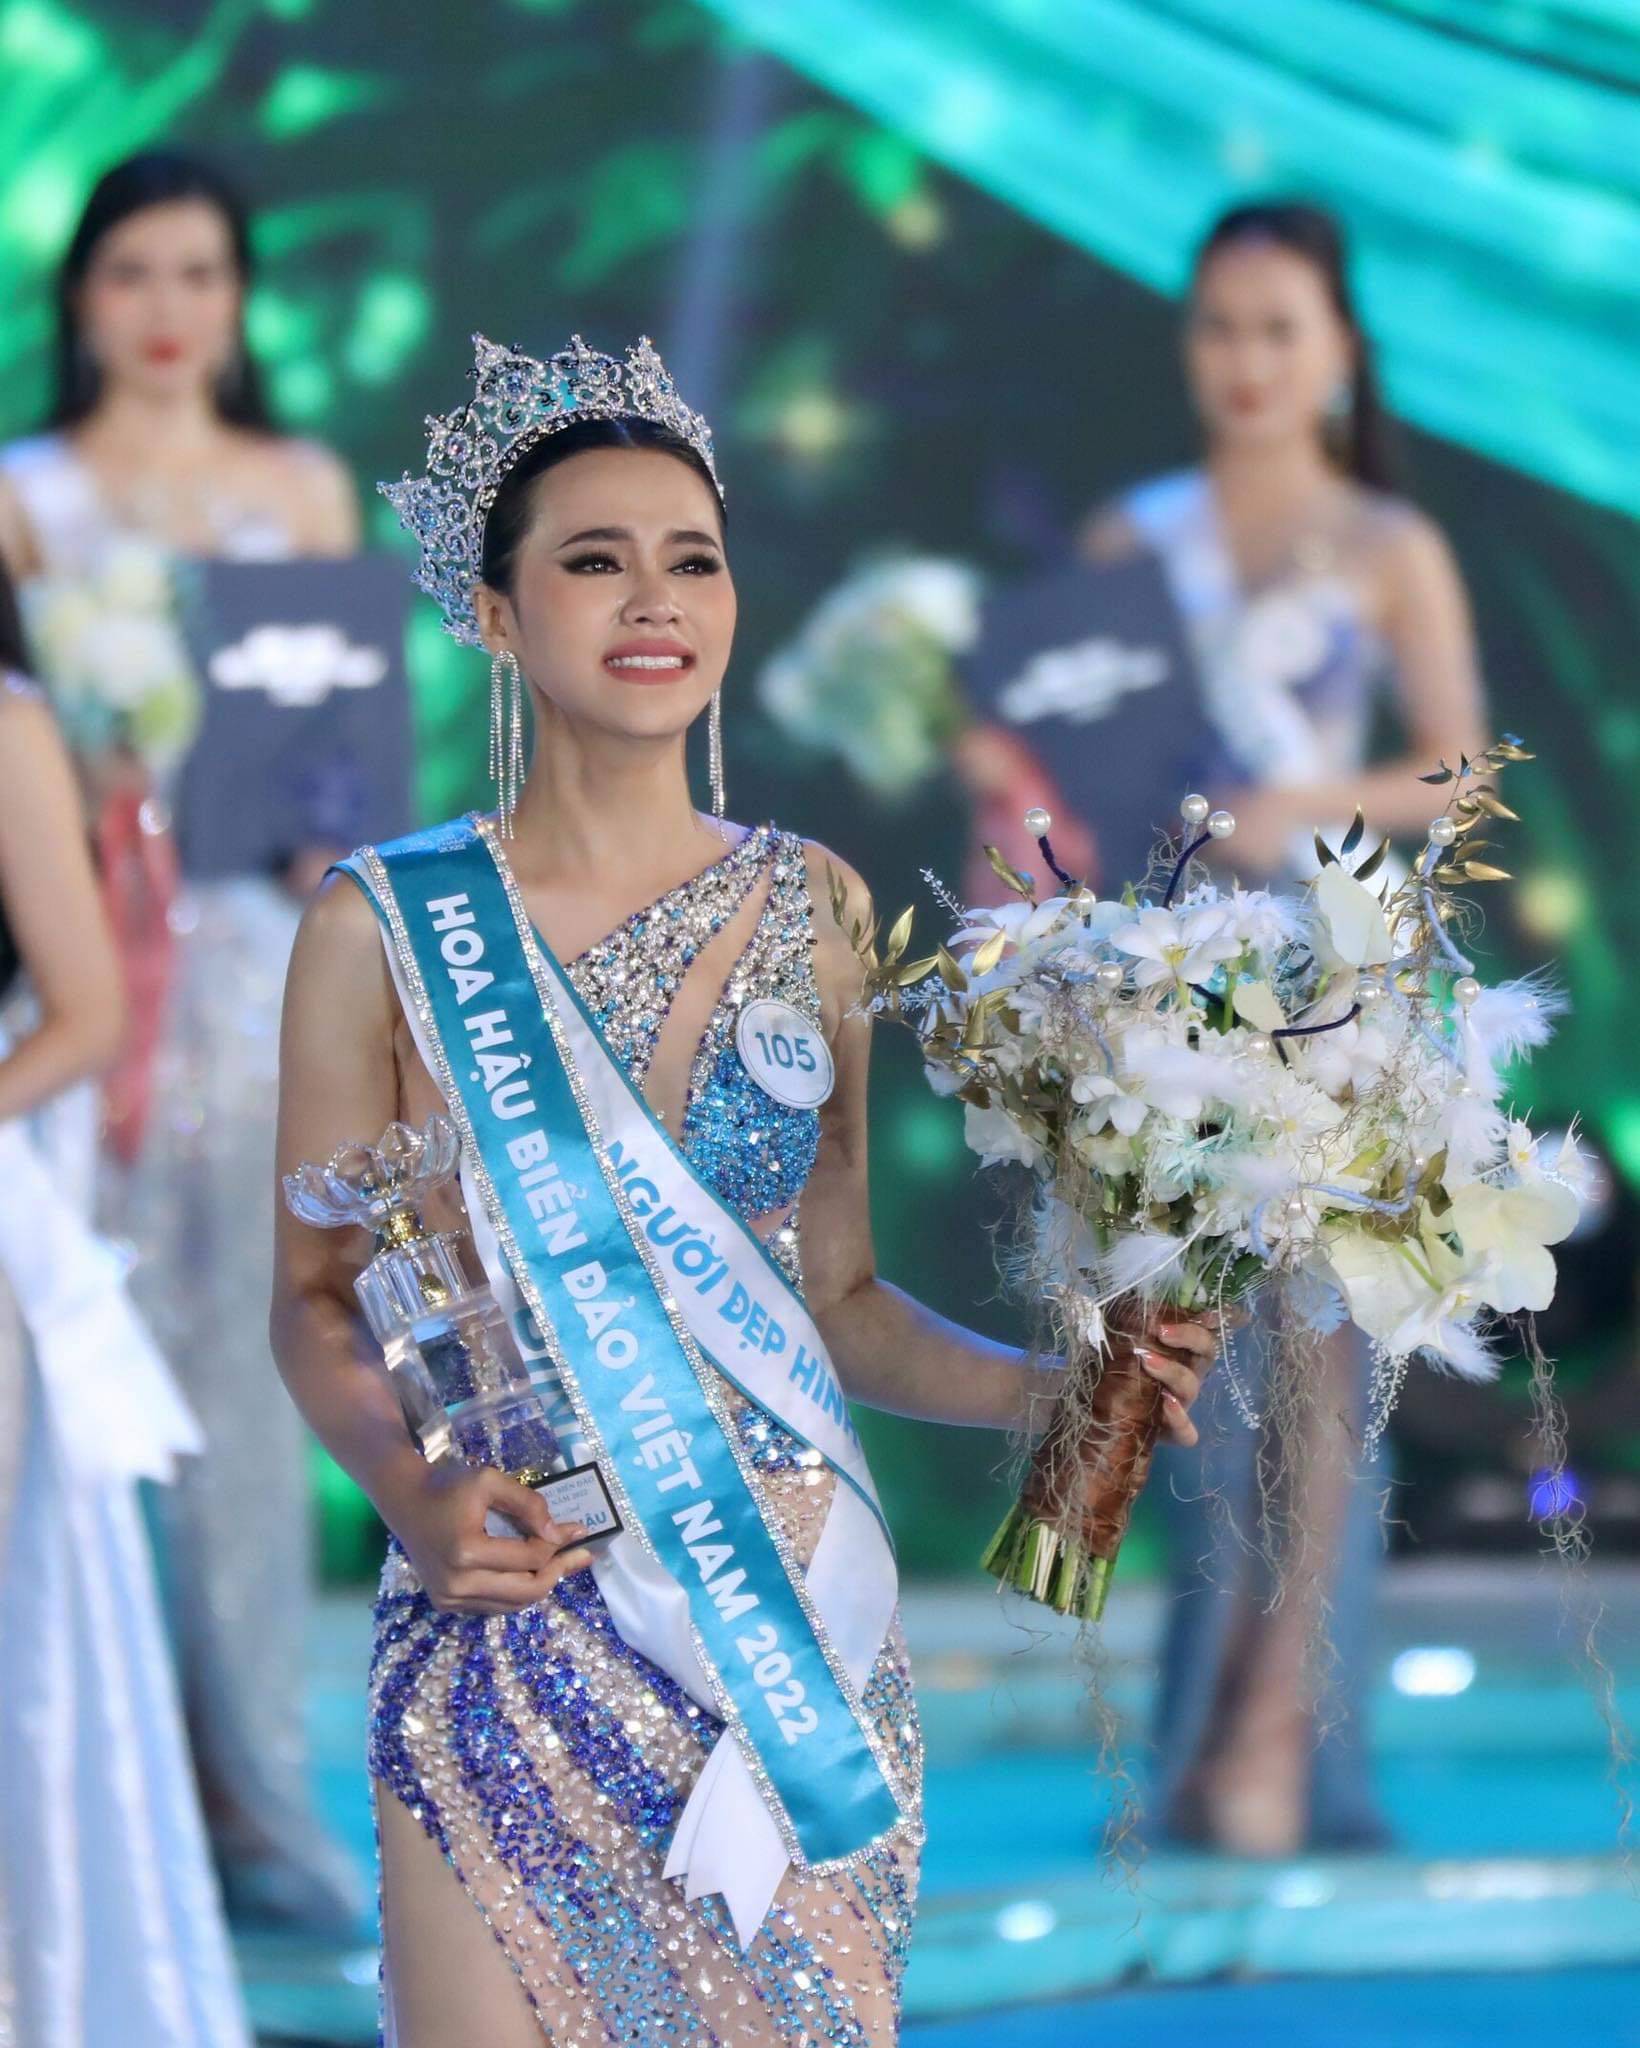 Hoa hậu đặc biệt nhất Việt Nam: Trả lại vương miện ngay khi đăng quang, nhan sắc và cuộc sống hiện ra sao? - Ảnh 1.